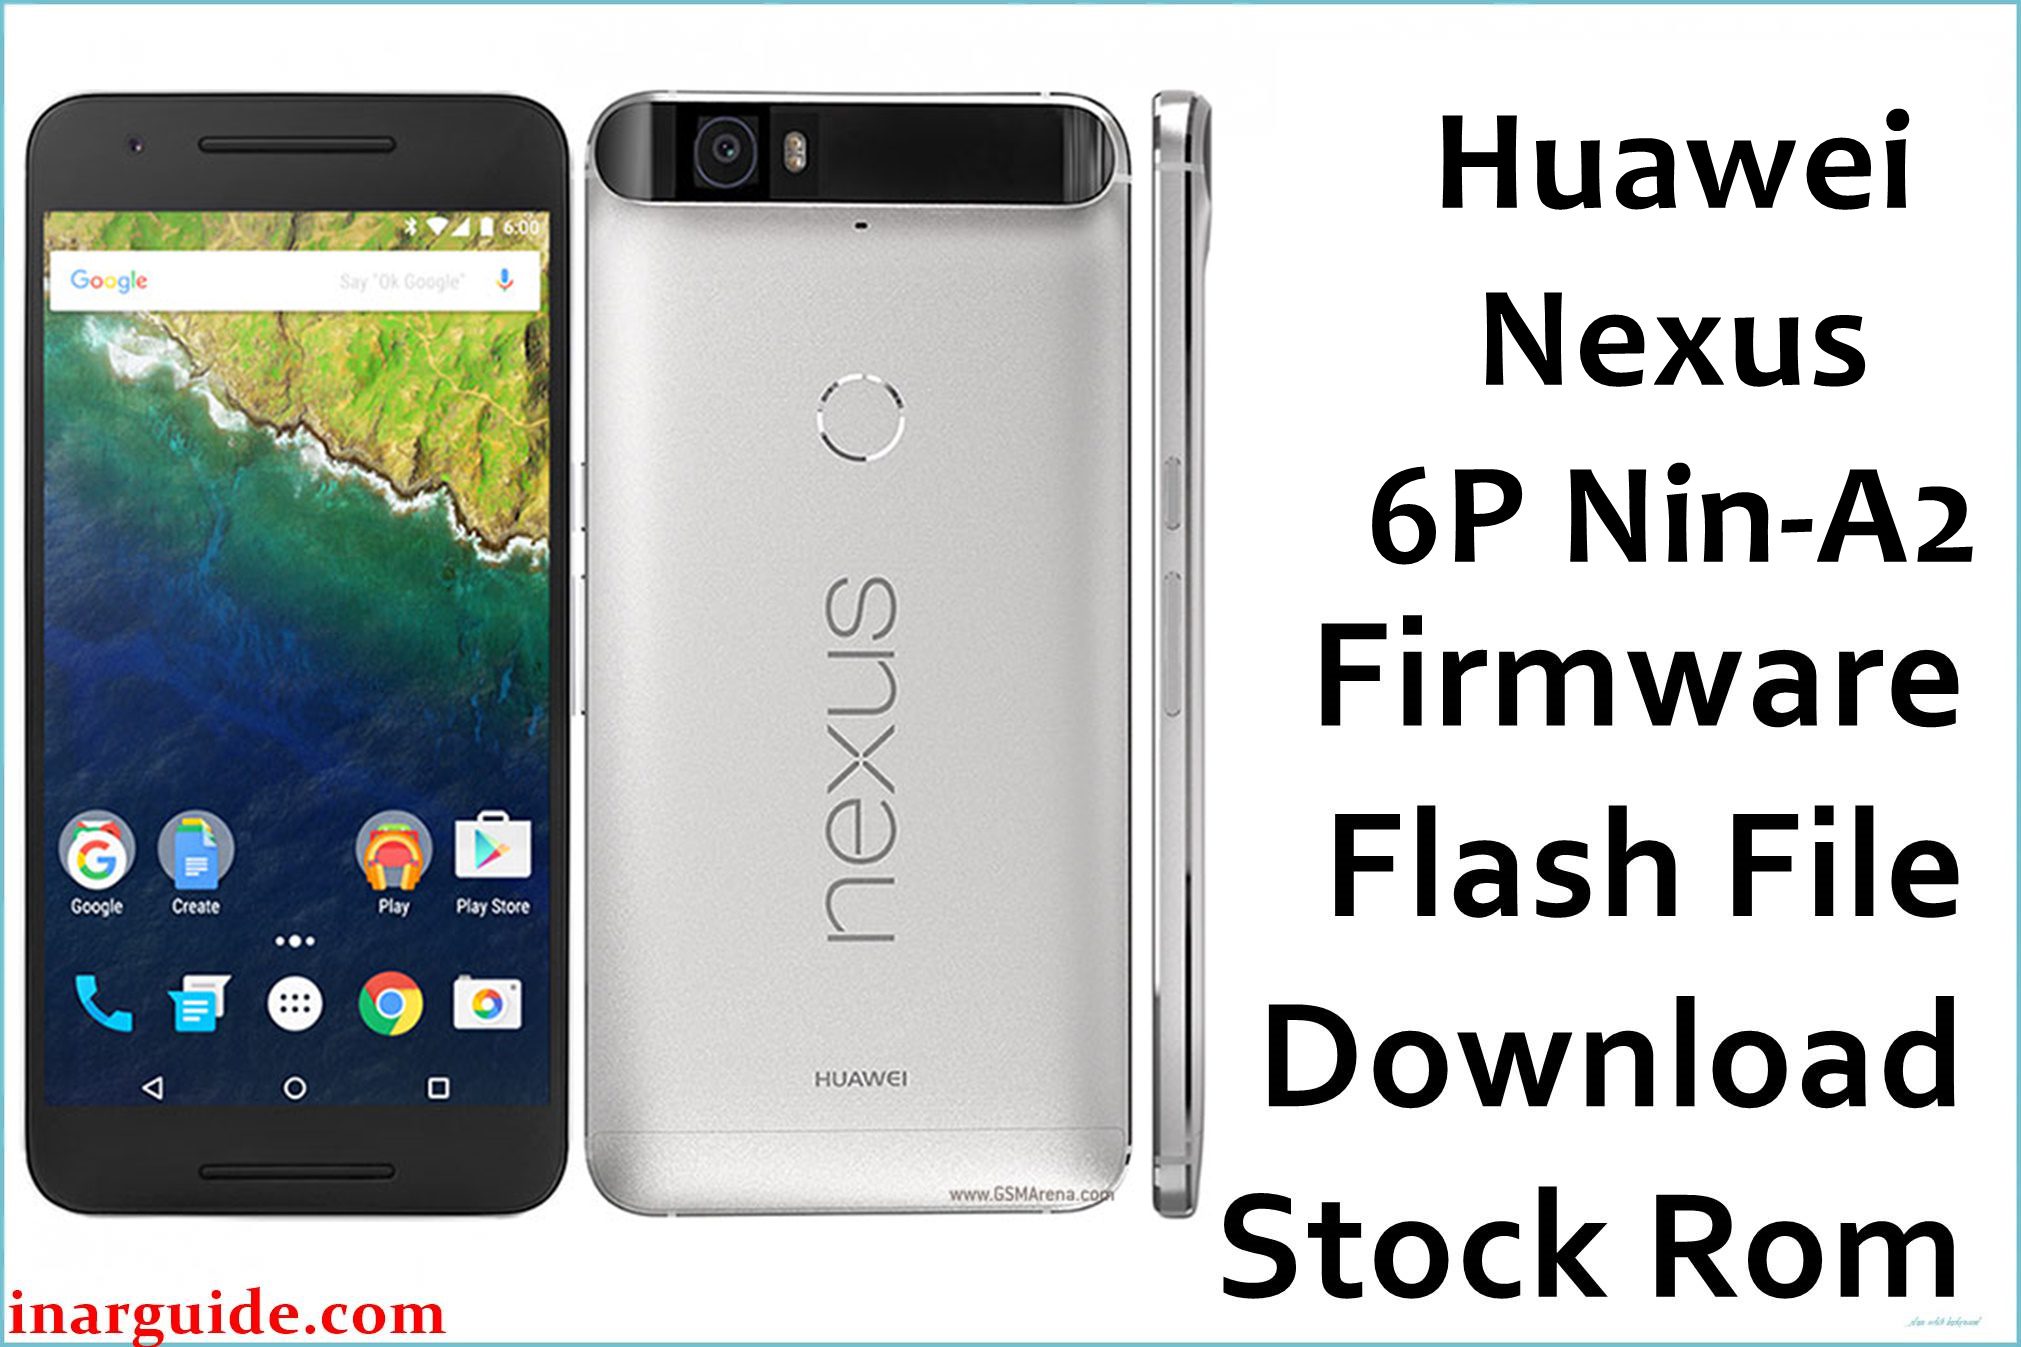 Huawei Nexus 6P Nin A2